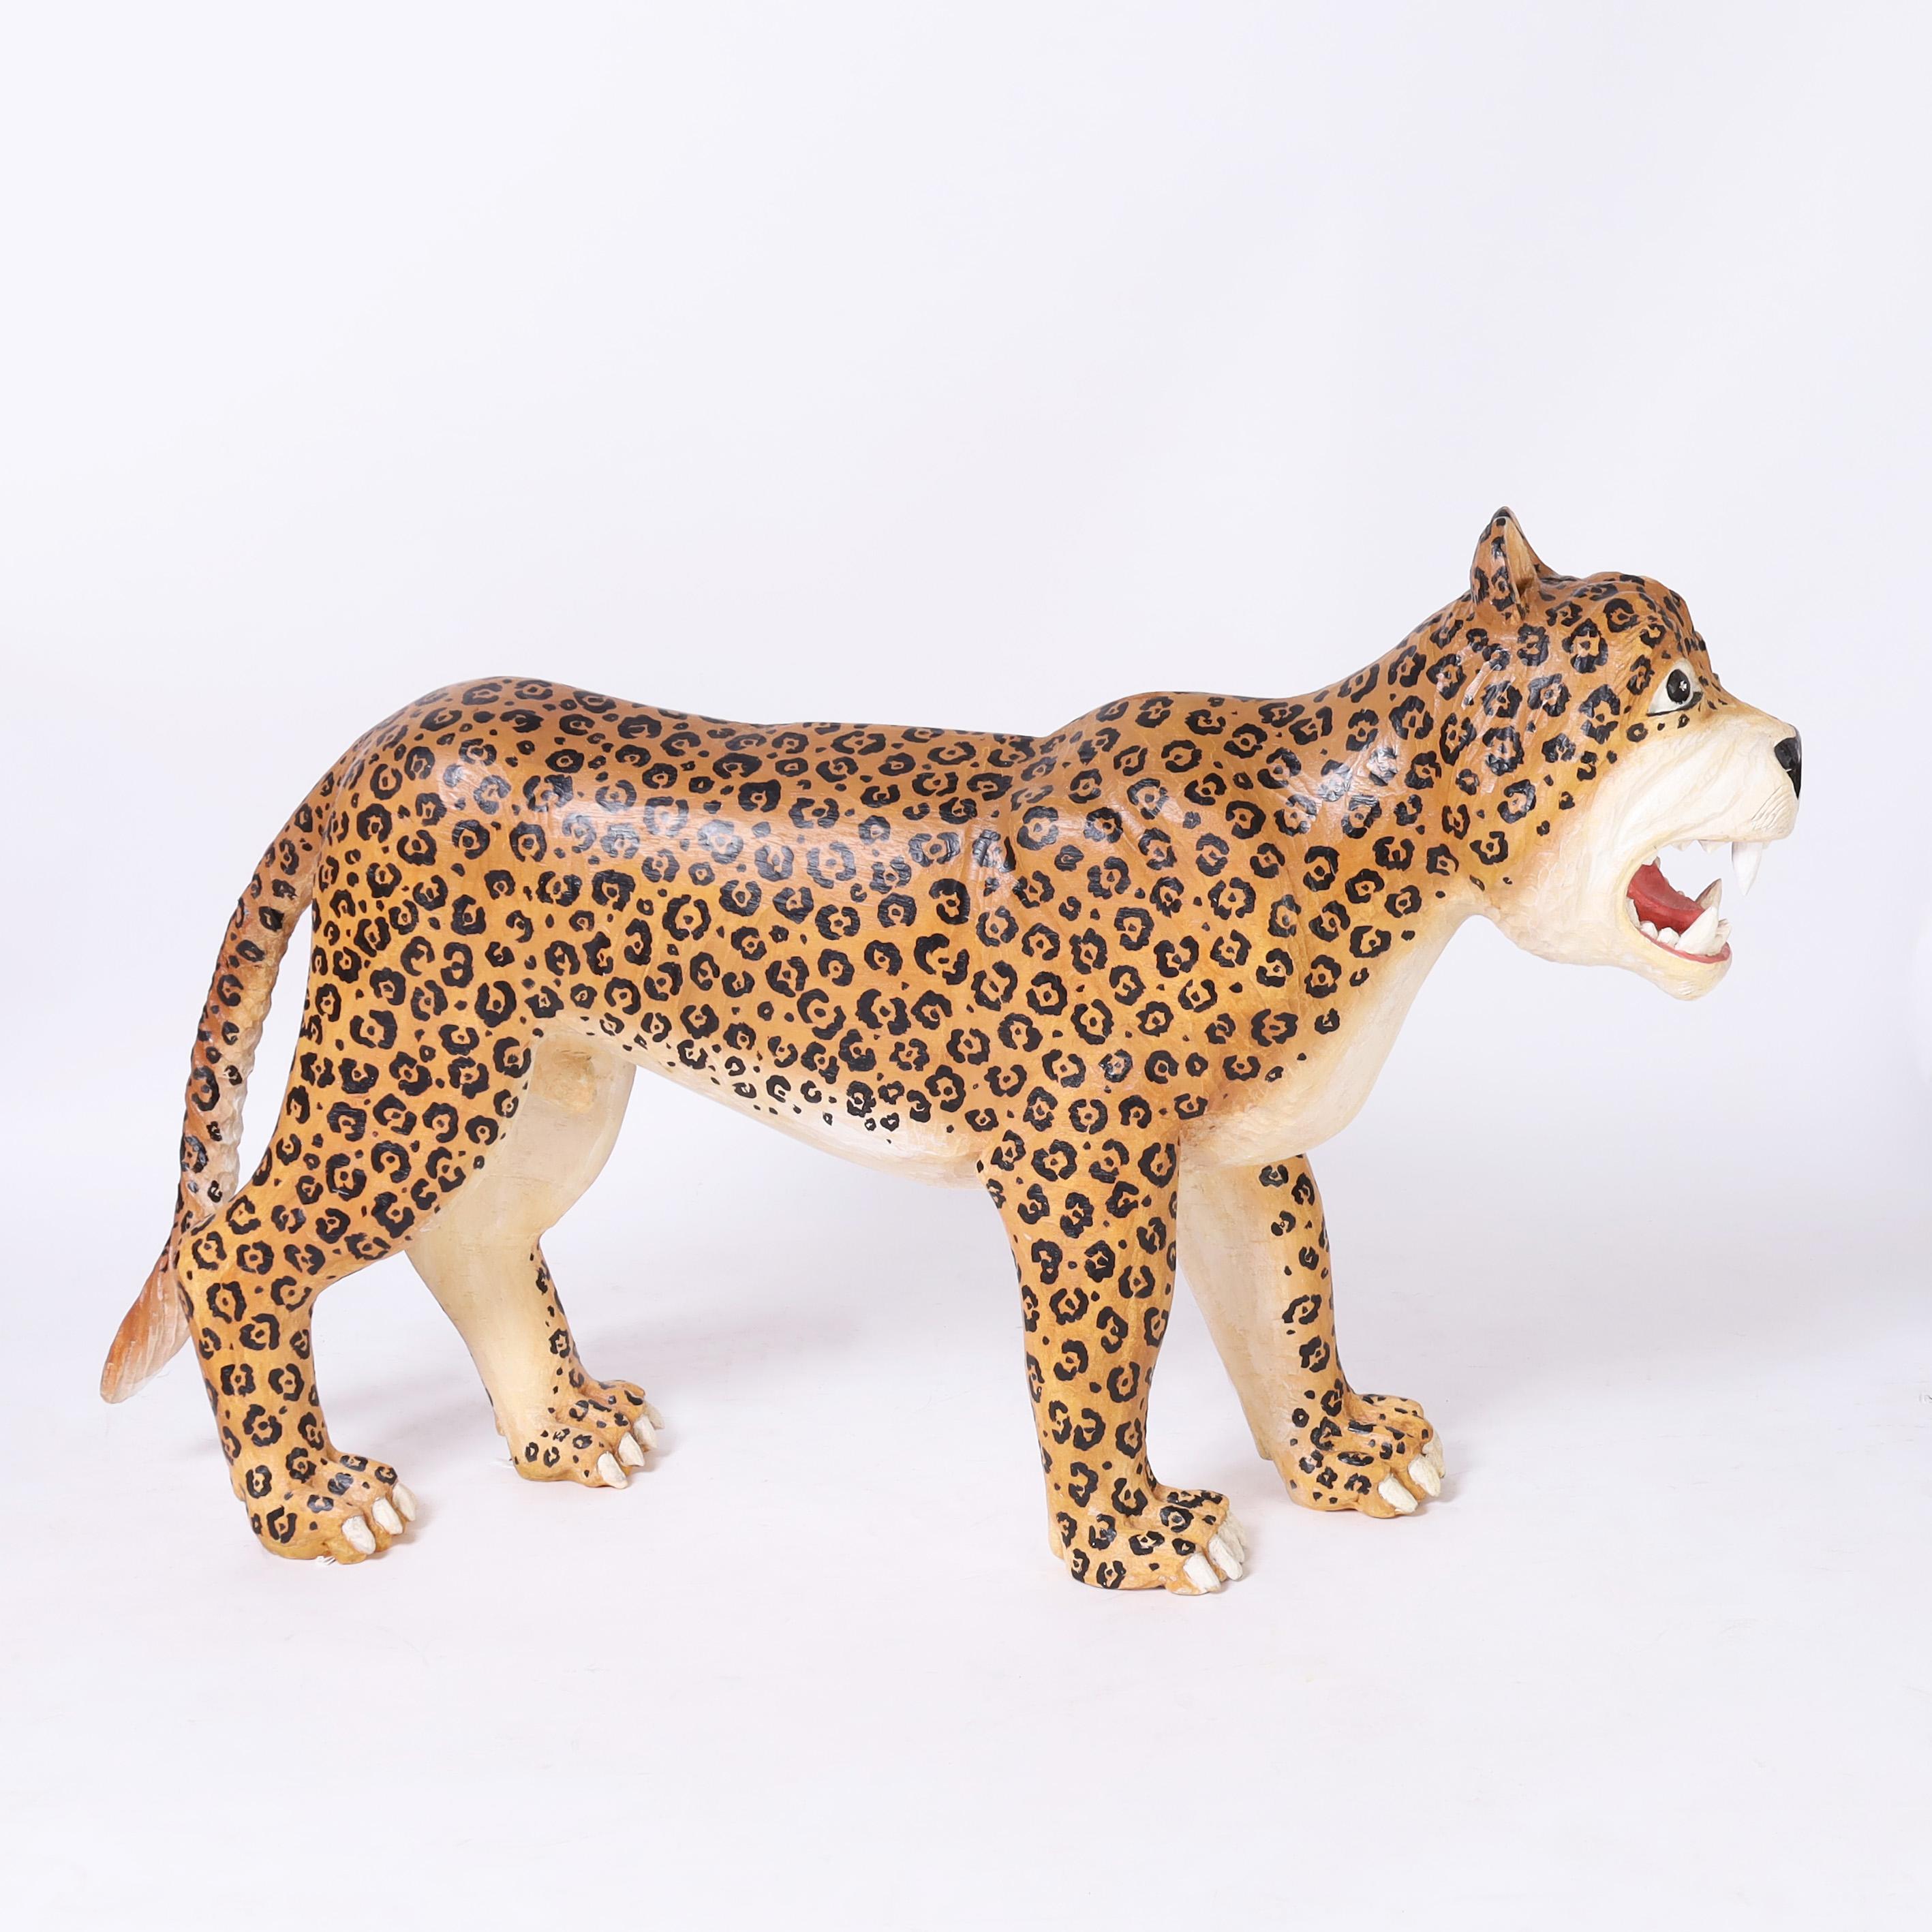 Jaguar fantaisiste vintage grandeur nature sculpté à la main, décoré de ses rosettes distinctives dans une expression faussement féroce.